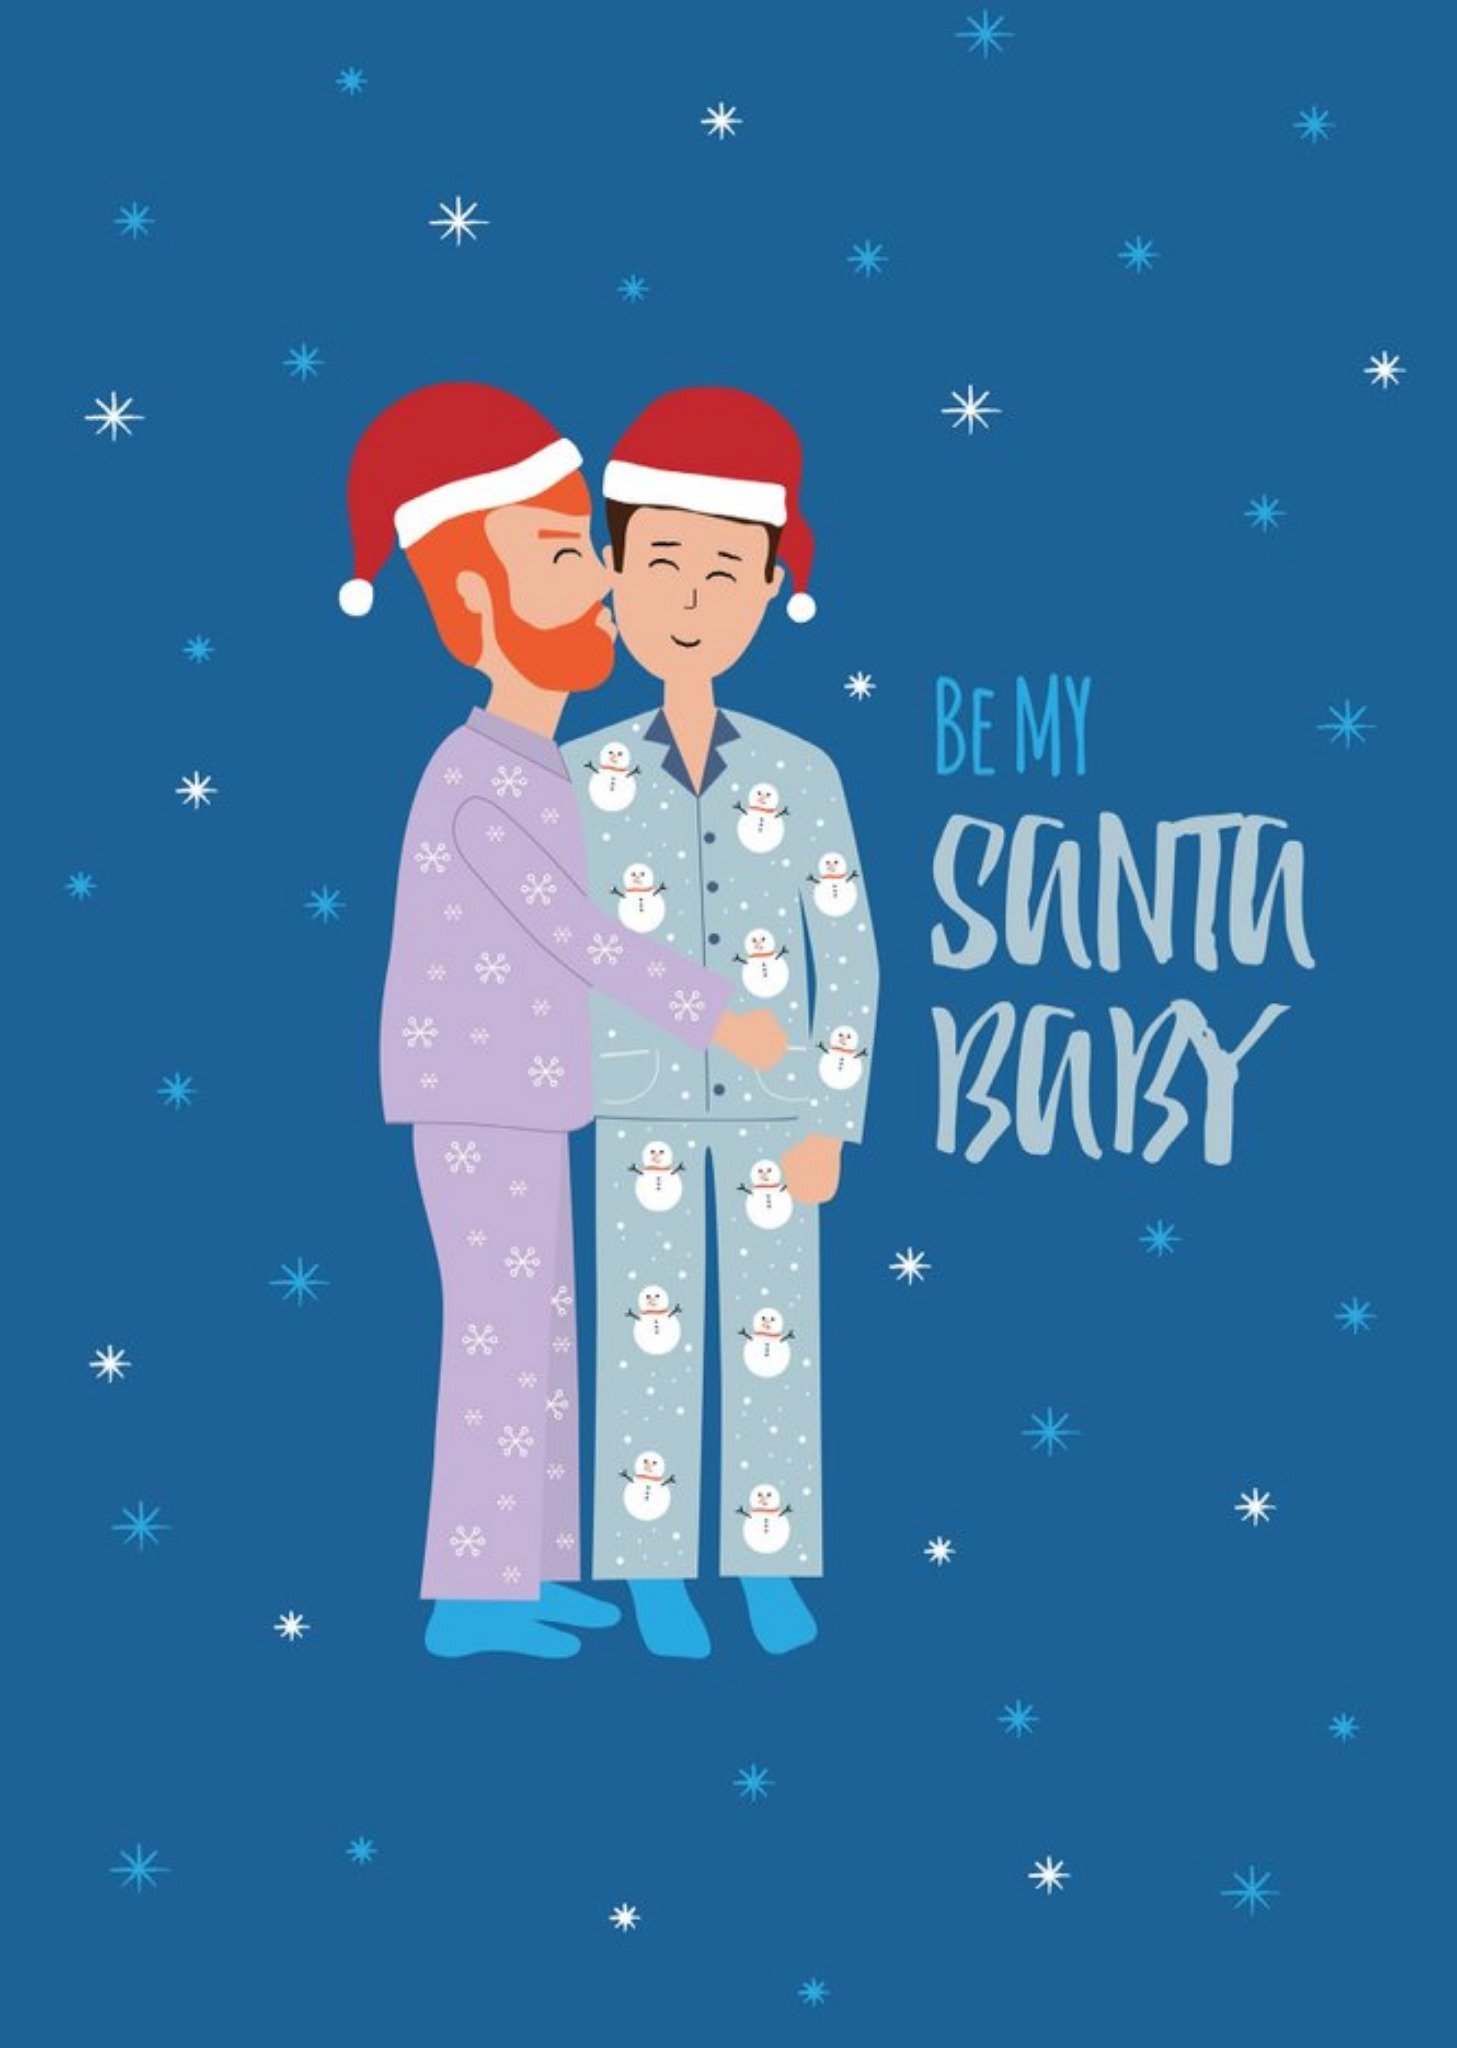 Moonpig Huetribe Two Men Be My Santa Baby Christmas Card, Large